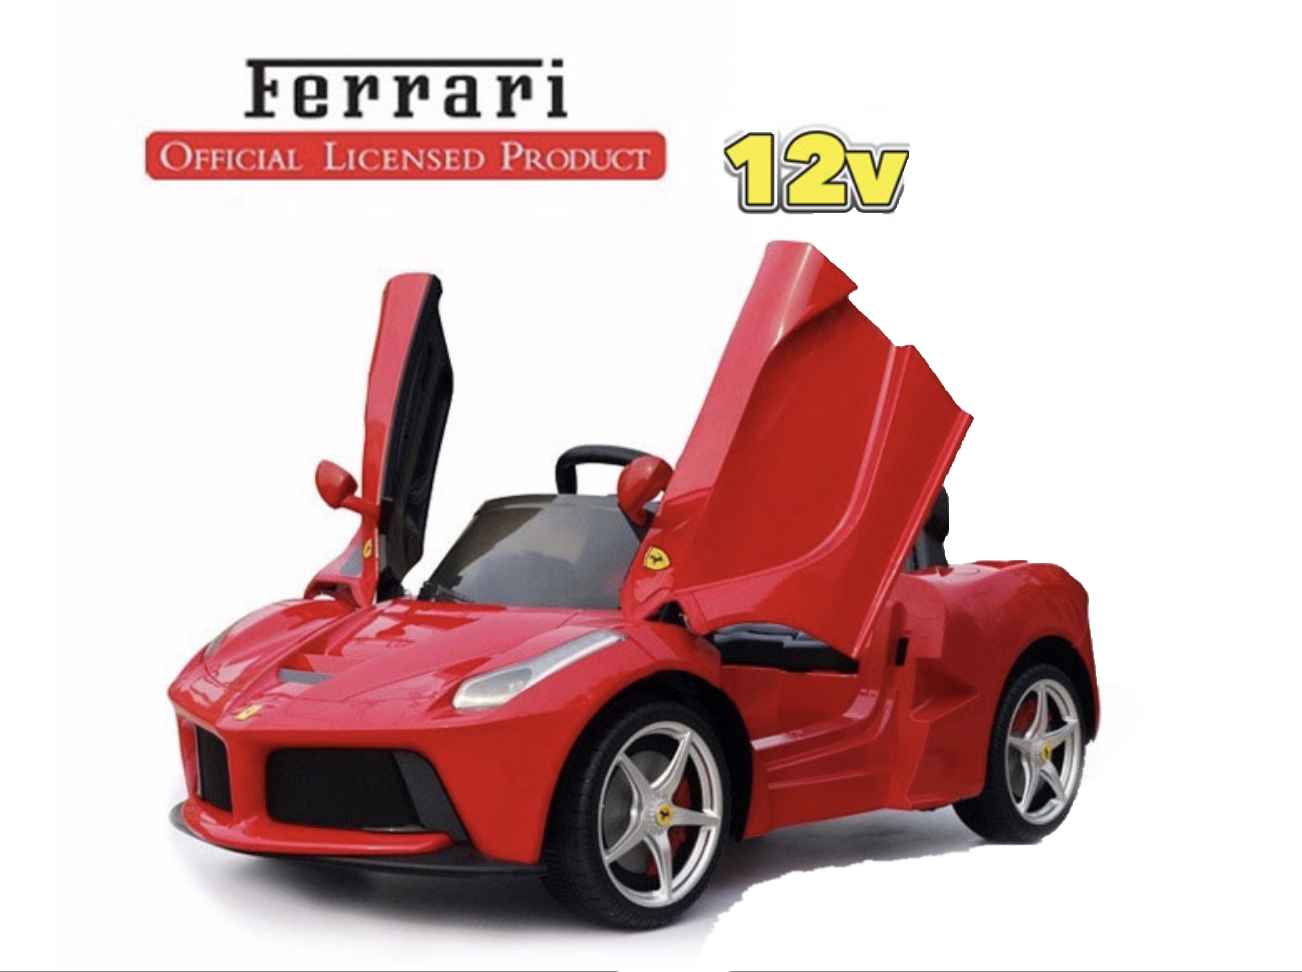 La Ferrari 12V - Clicca l'immagine per chiudere